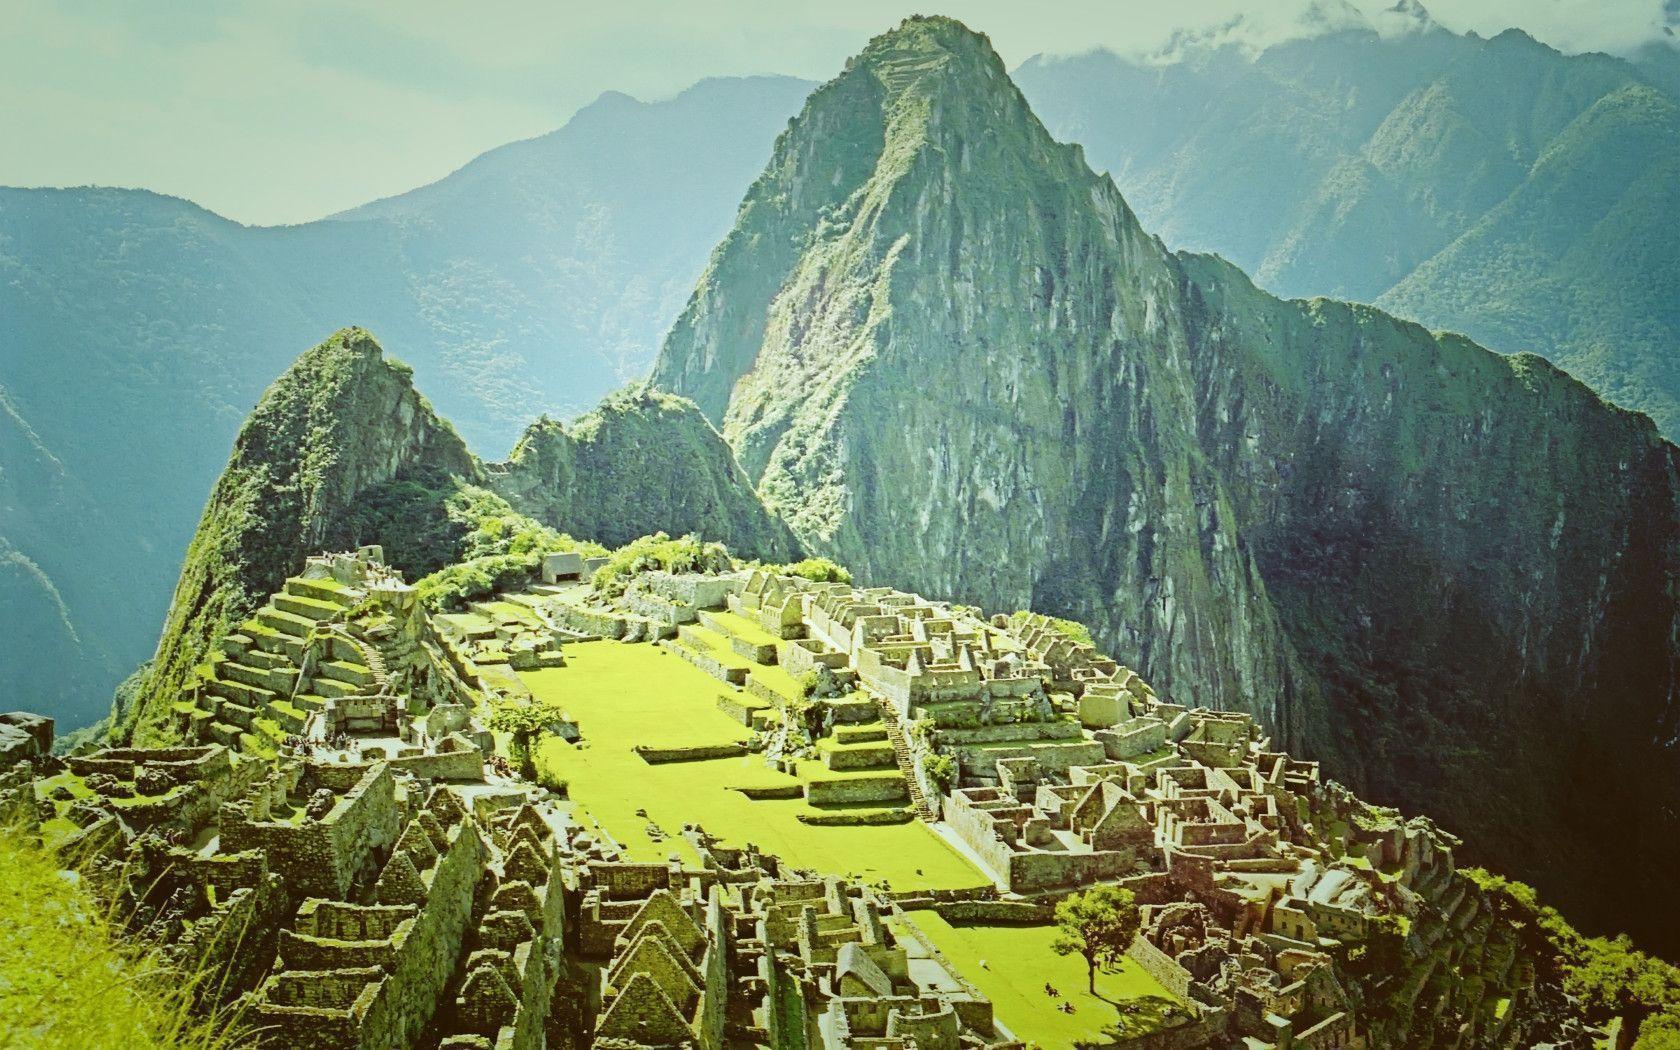 Machu Picchu, Peru widescreen wallpaper. Wide